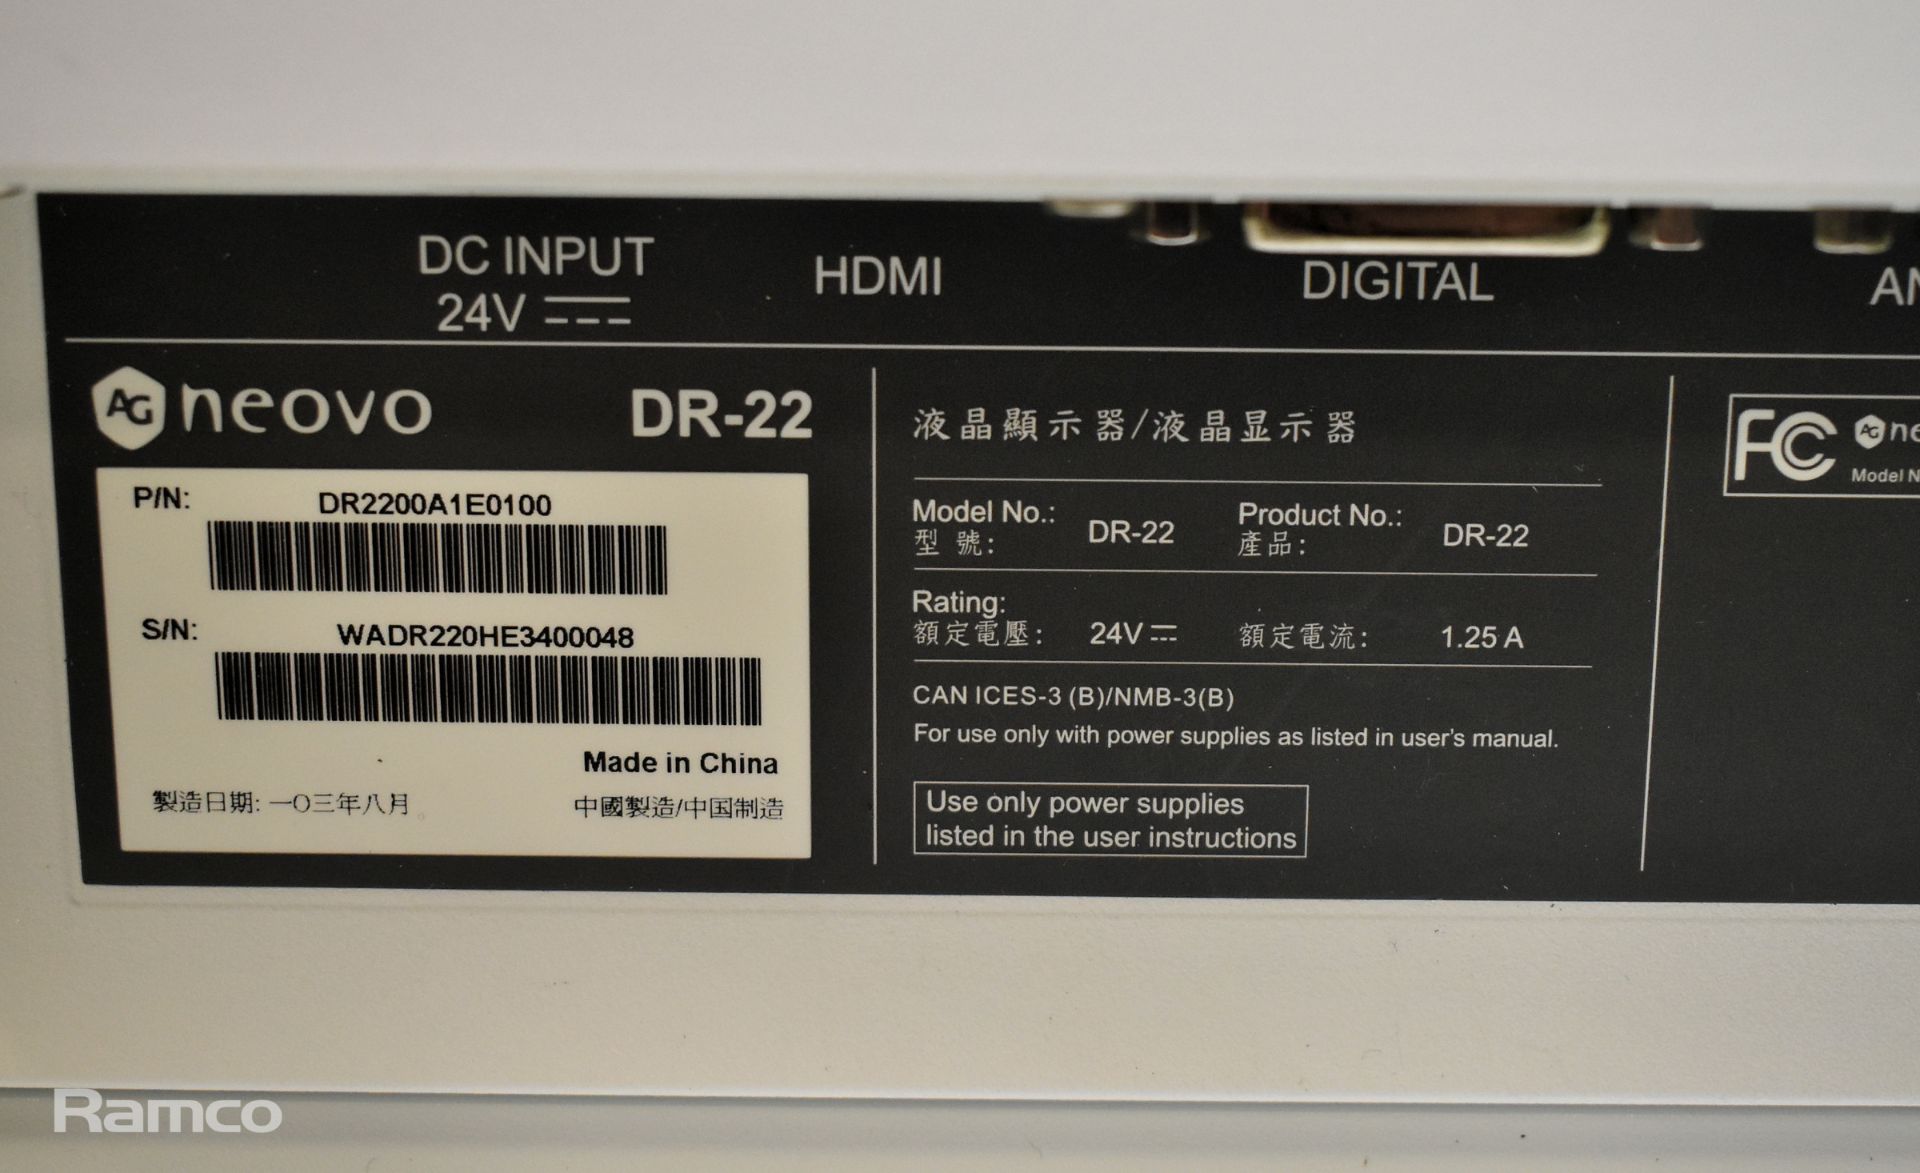 AG Neovo 22 inch LED backlit monitor - model DR-22 - Image 4 of 6